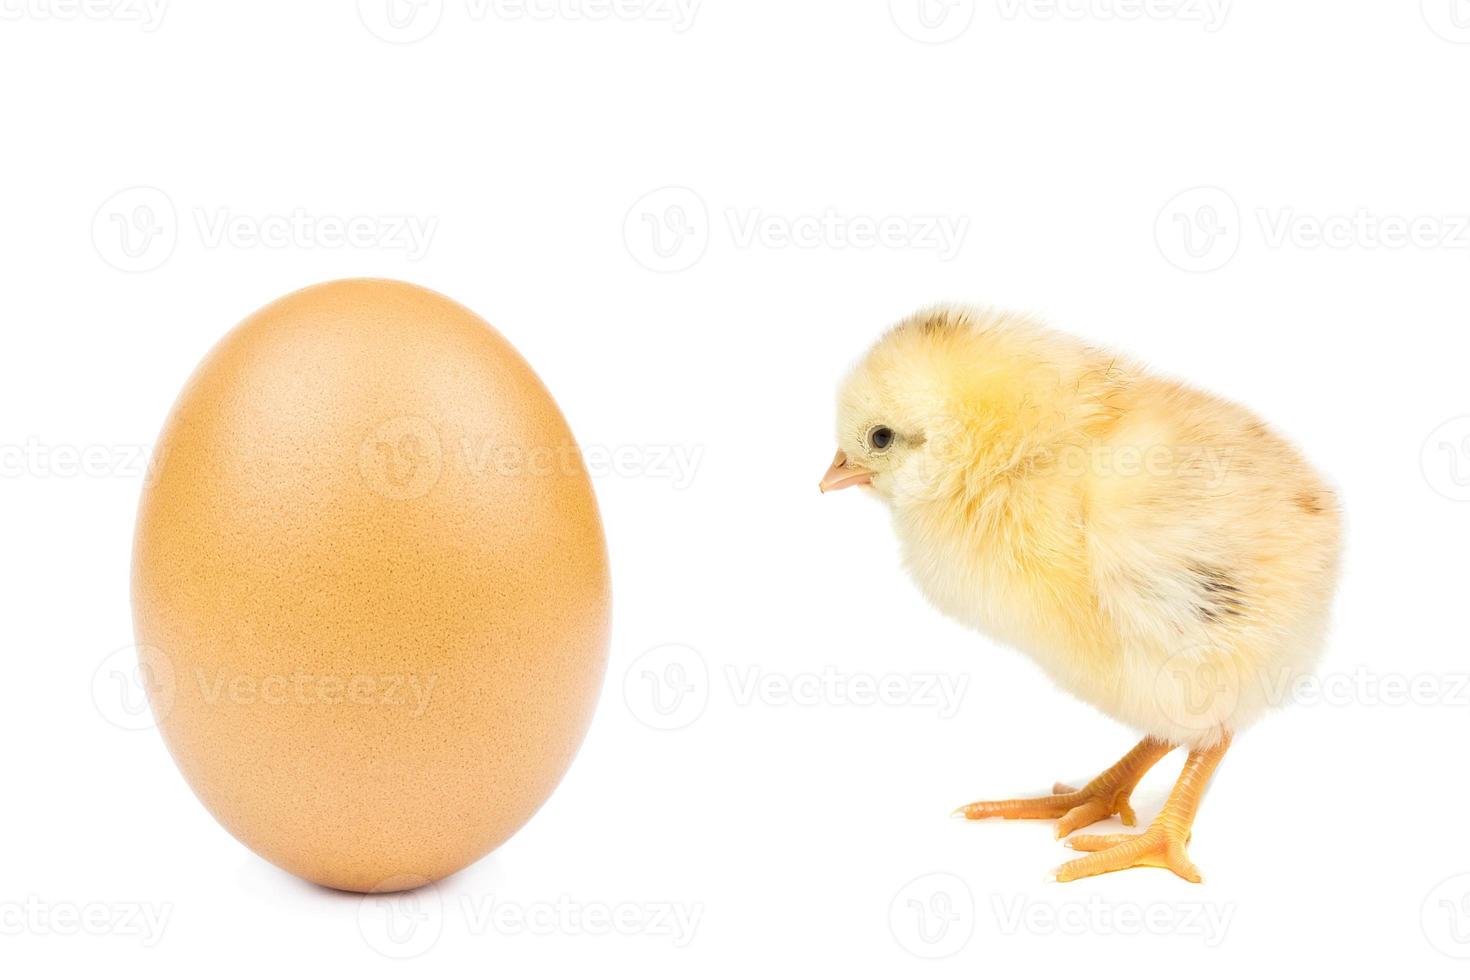 ovo de galinha no fundo branco foto